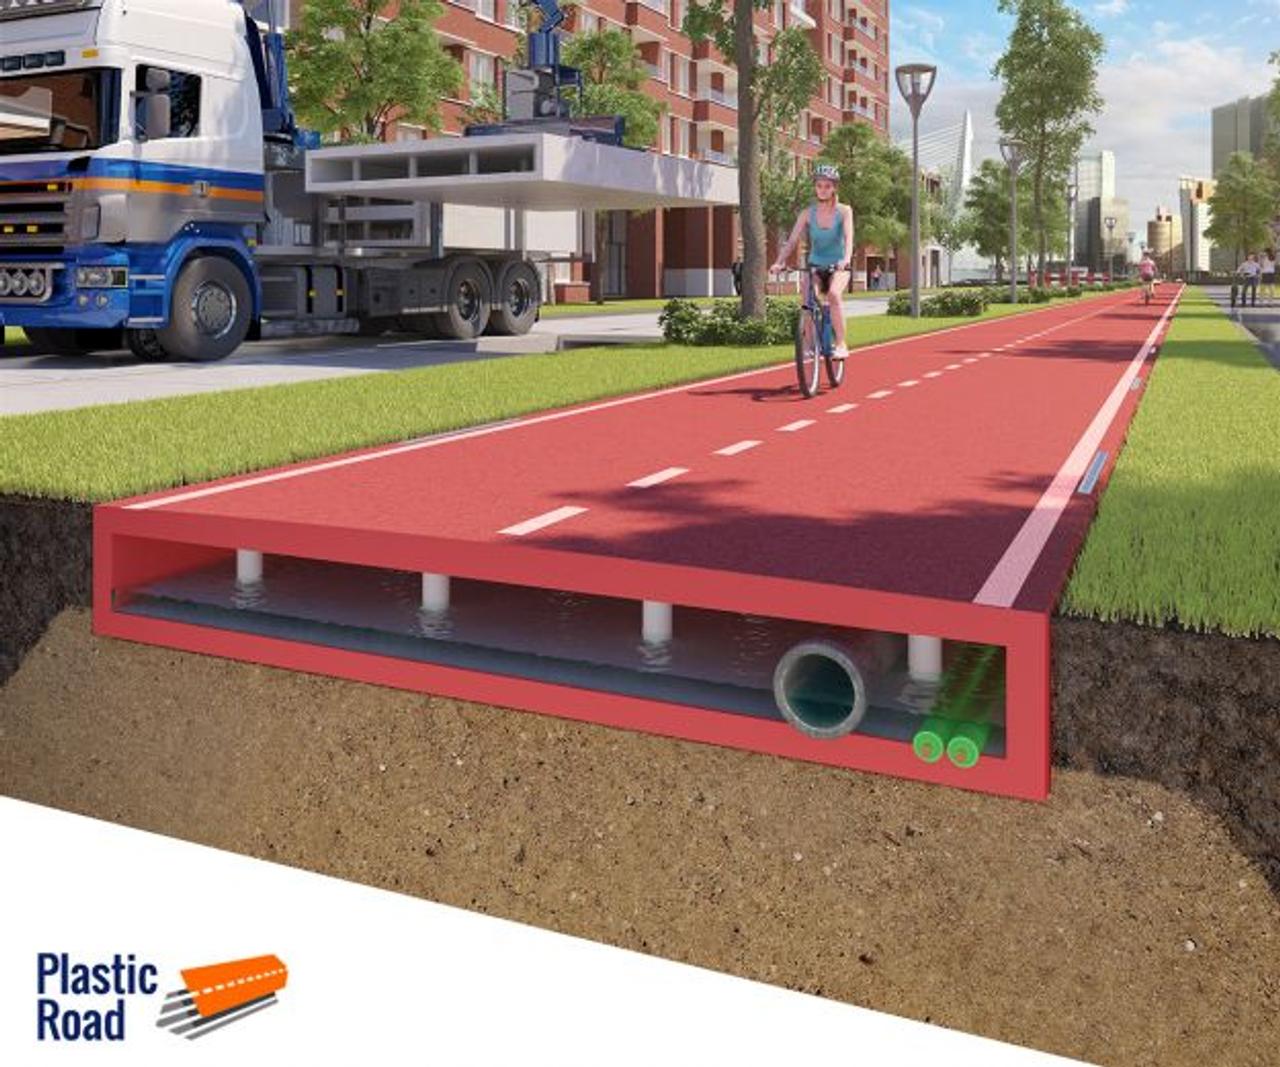 インフラの革命だ！ オランダで廃プラスチックを再利用してモジュラー式道路を作る計画